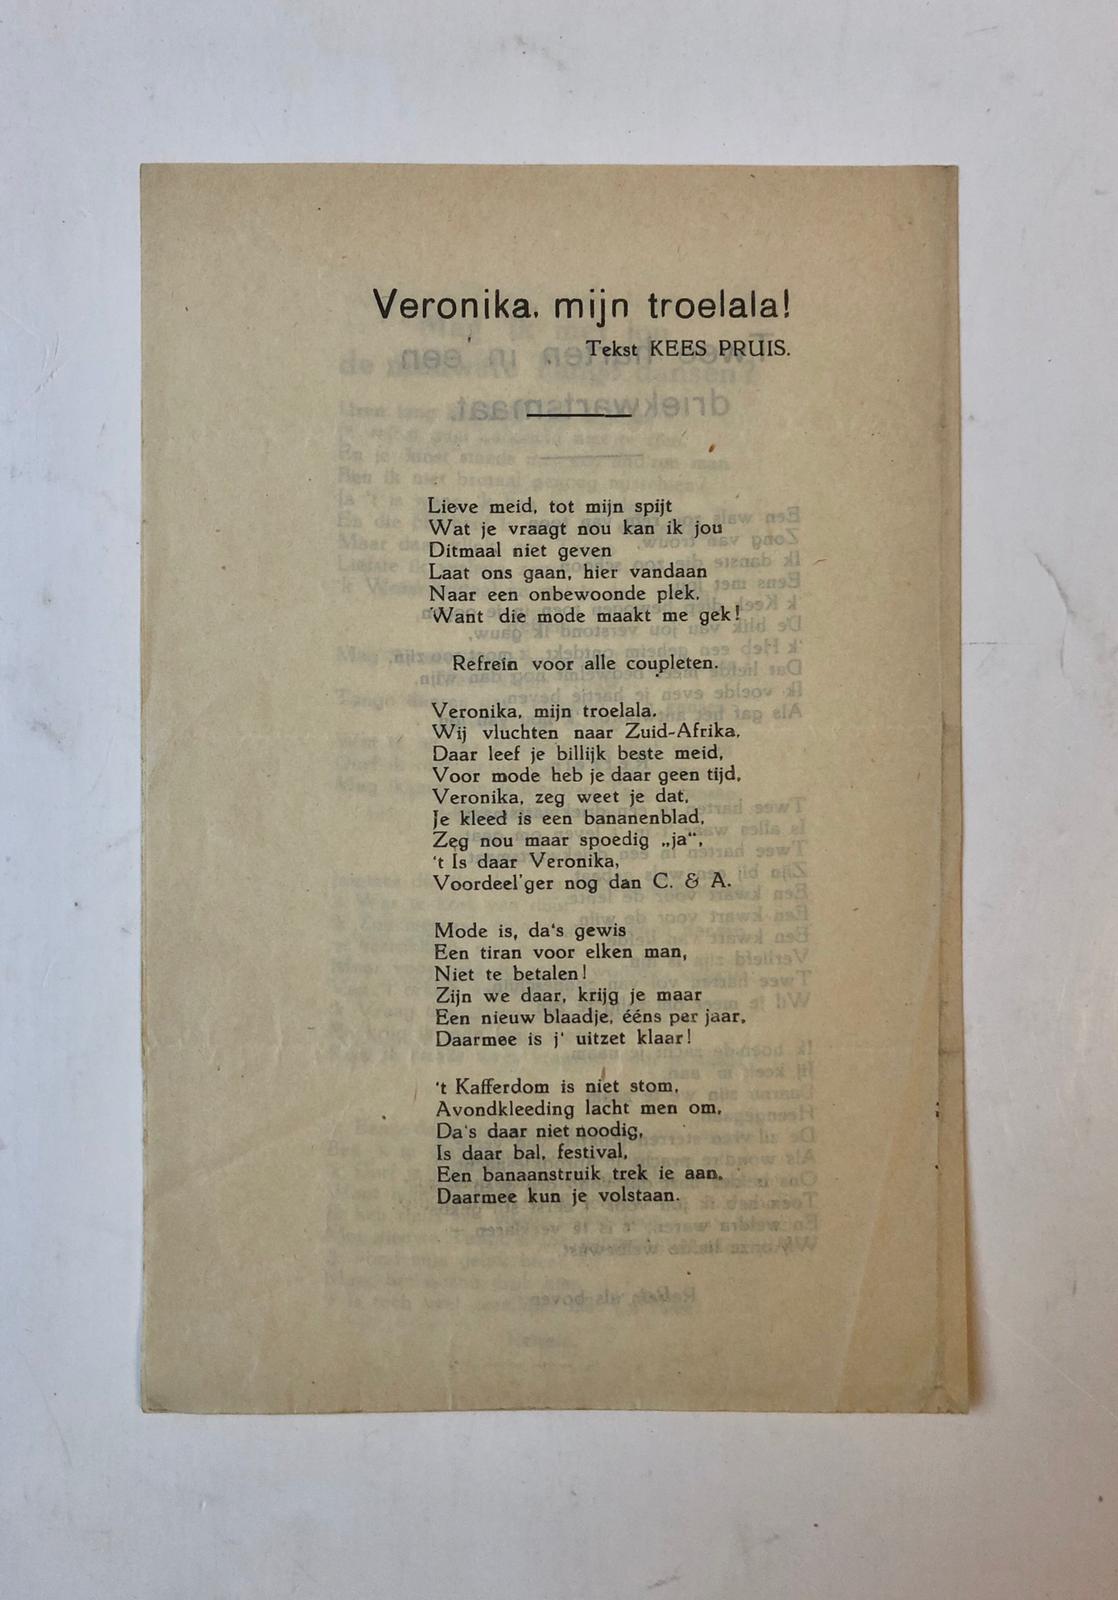  - [Printed song, gedrukt liedje MODE] Liedje `Veronica mijn troelala!' door Kees Pruis, met zinspelingen op mode. Ca. 1935. Gedrukt, 8(: 1 p.